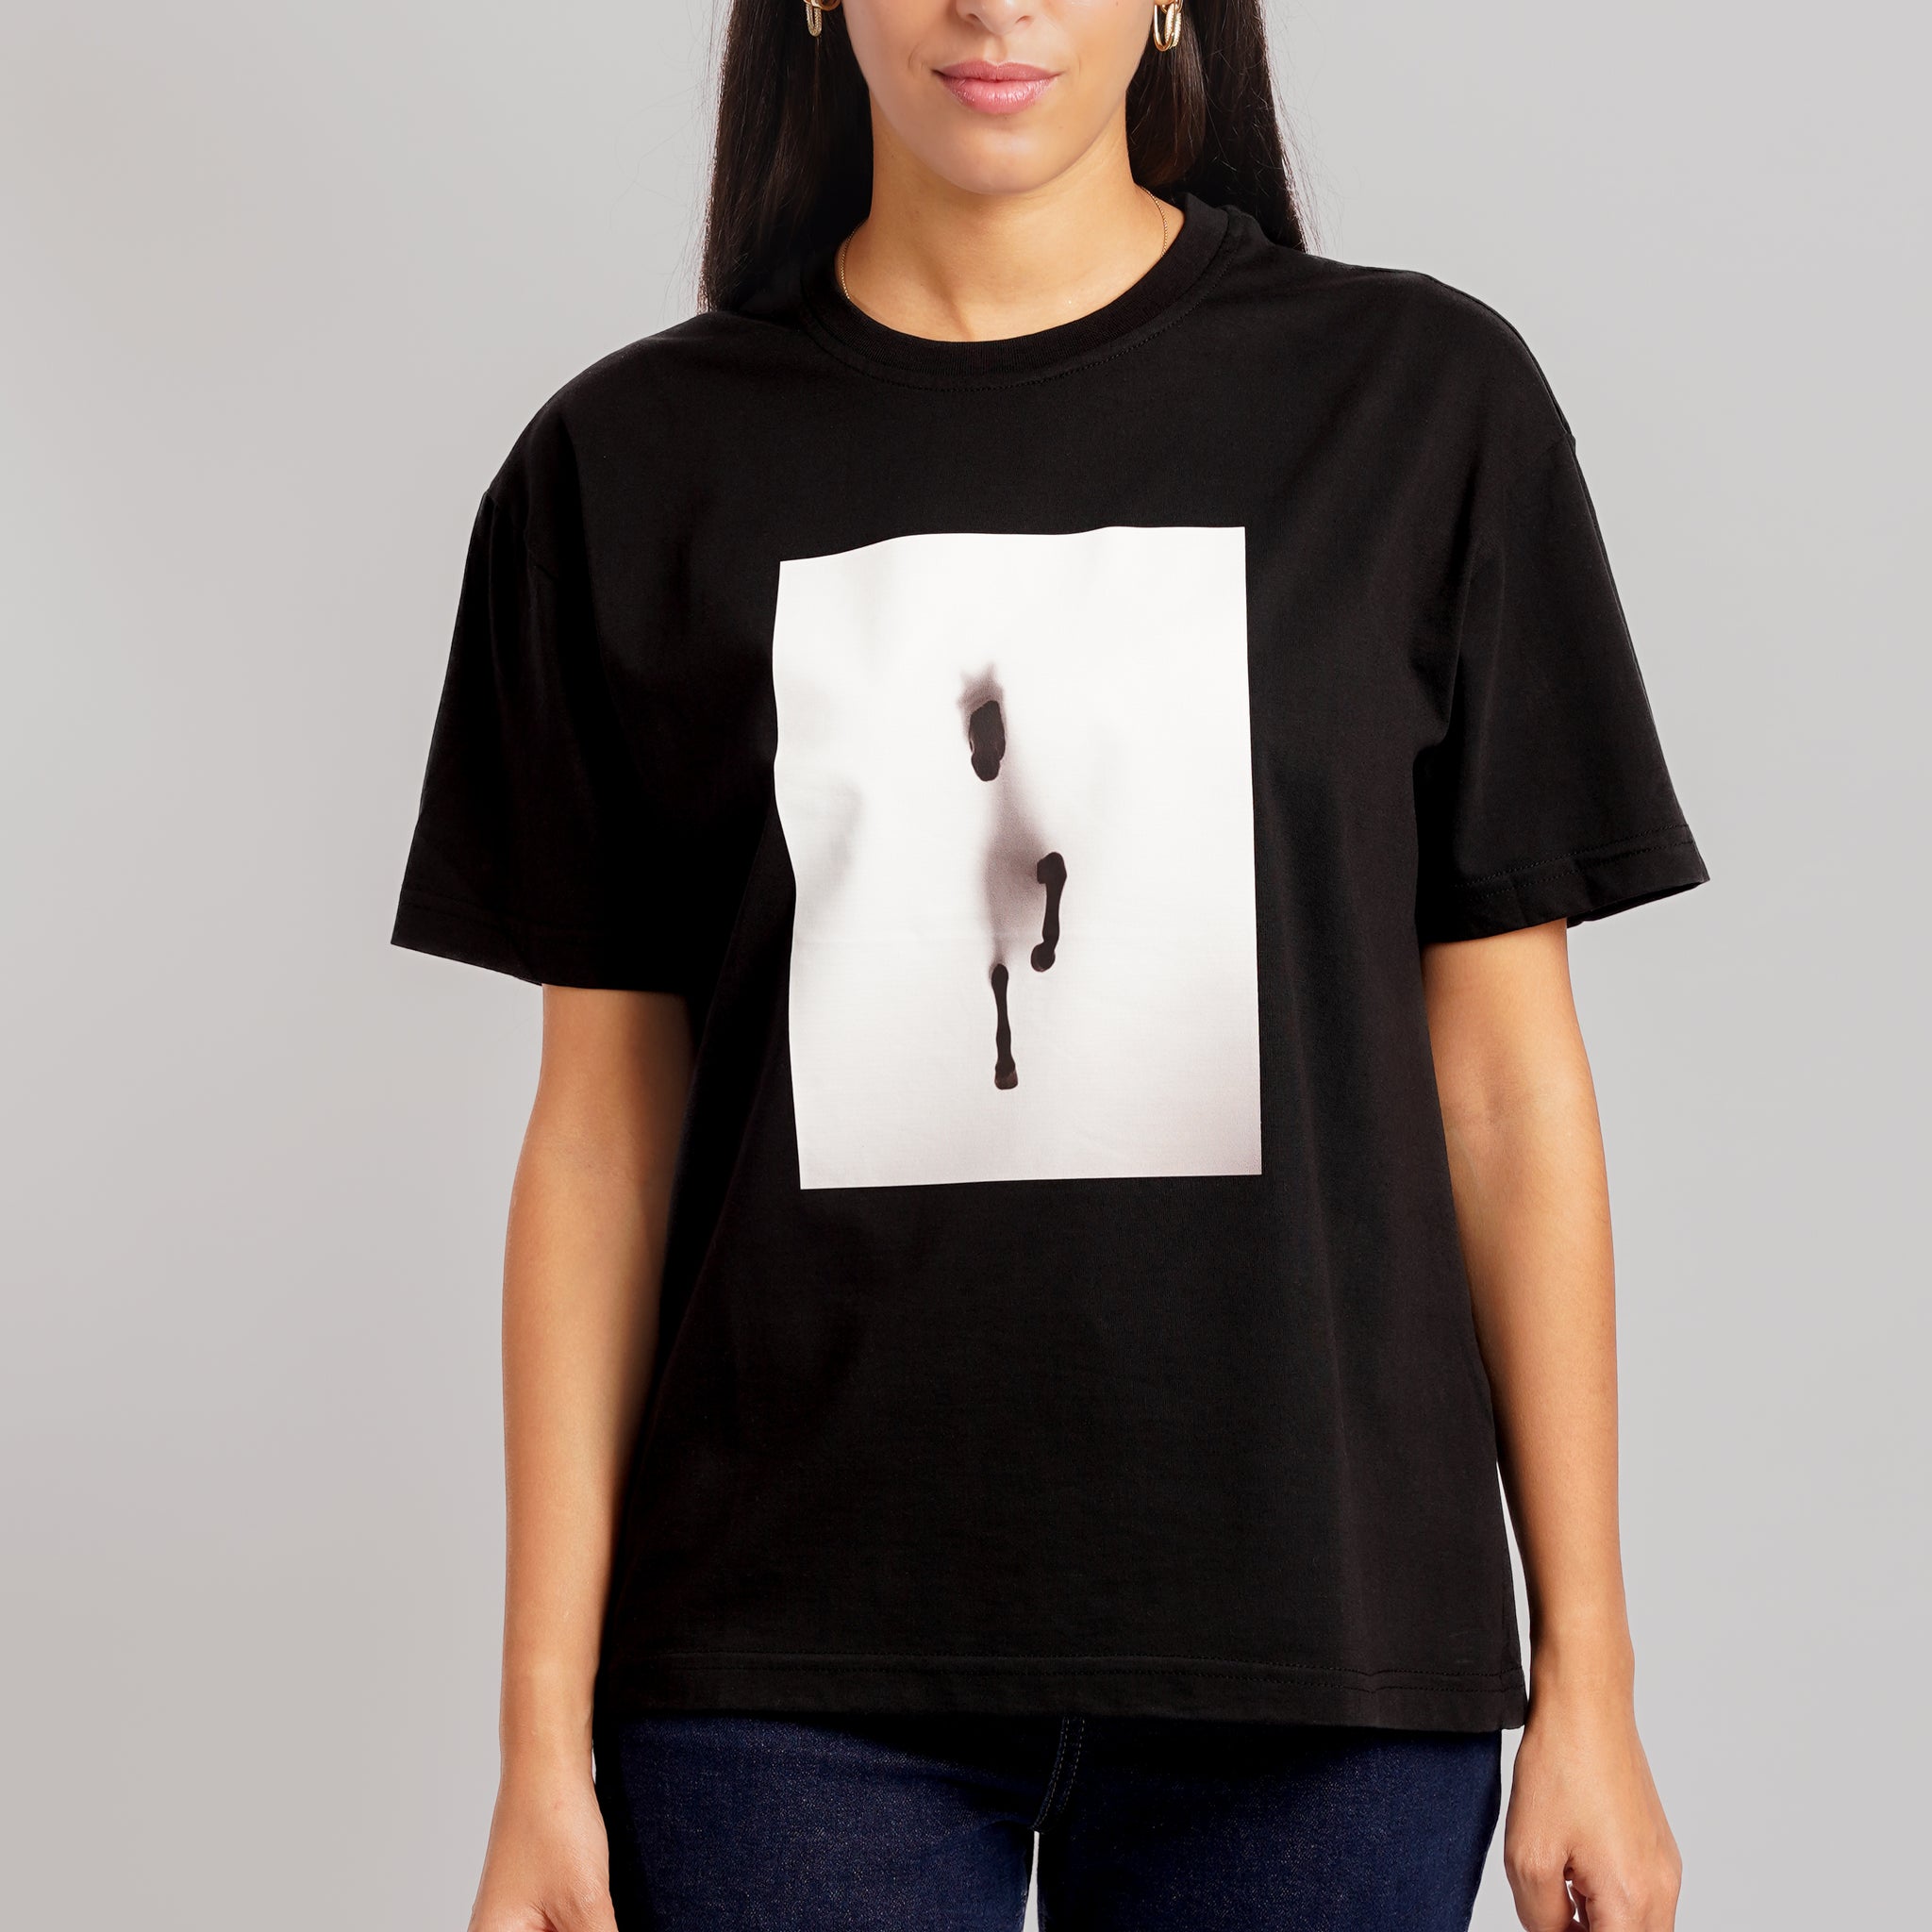 Arabian T-Shirt Women